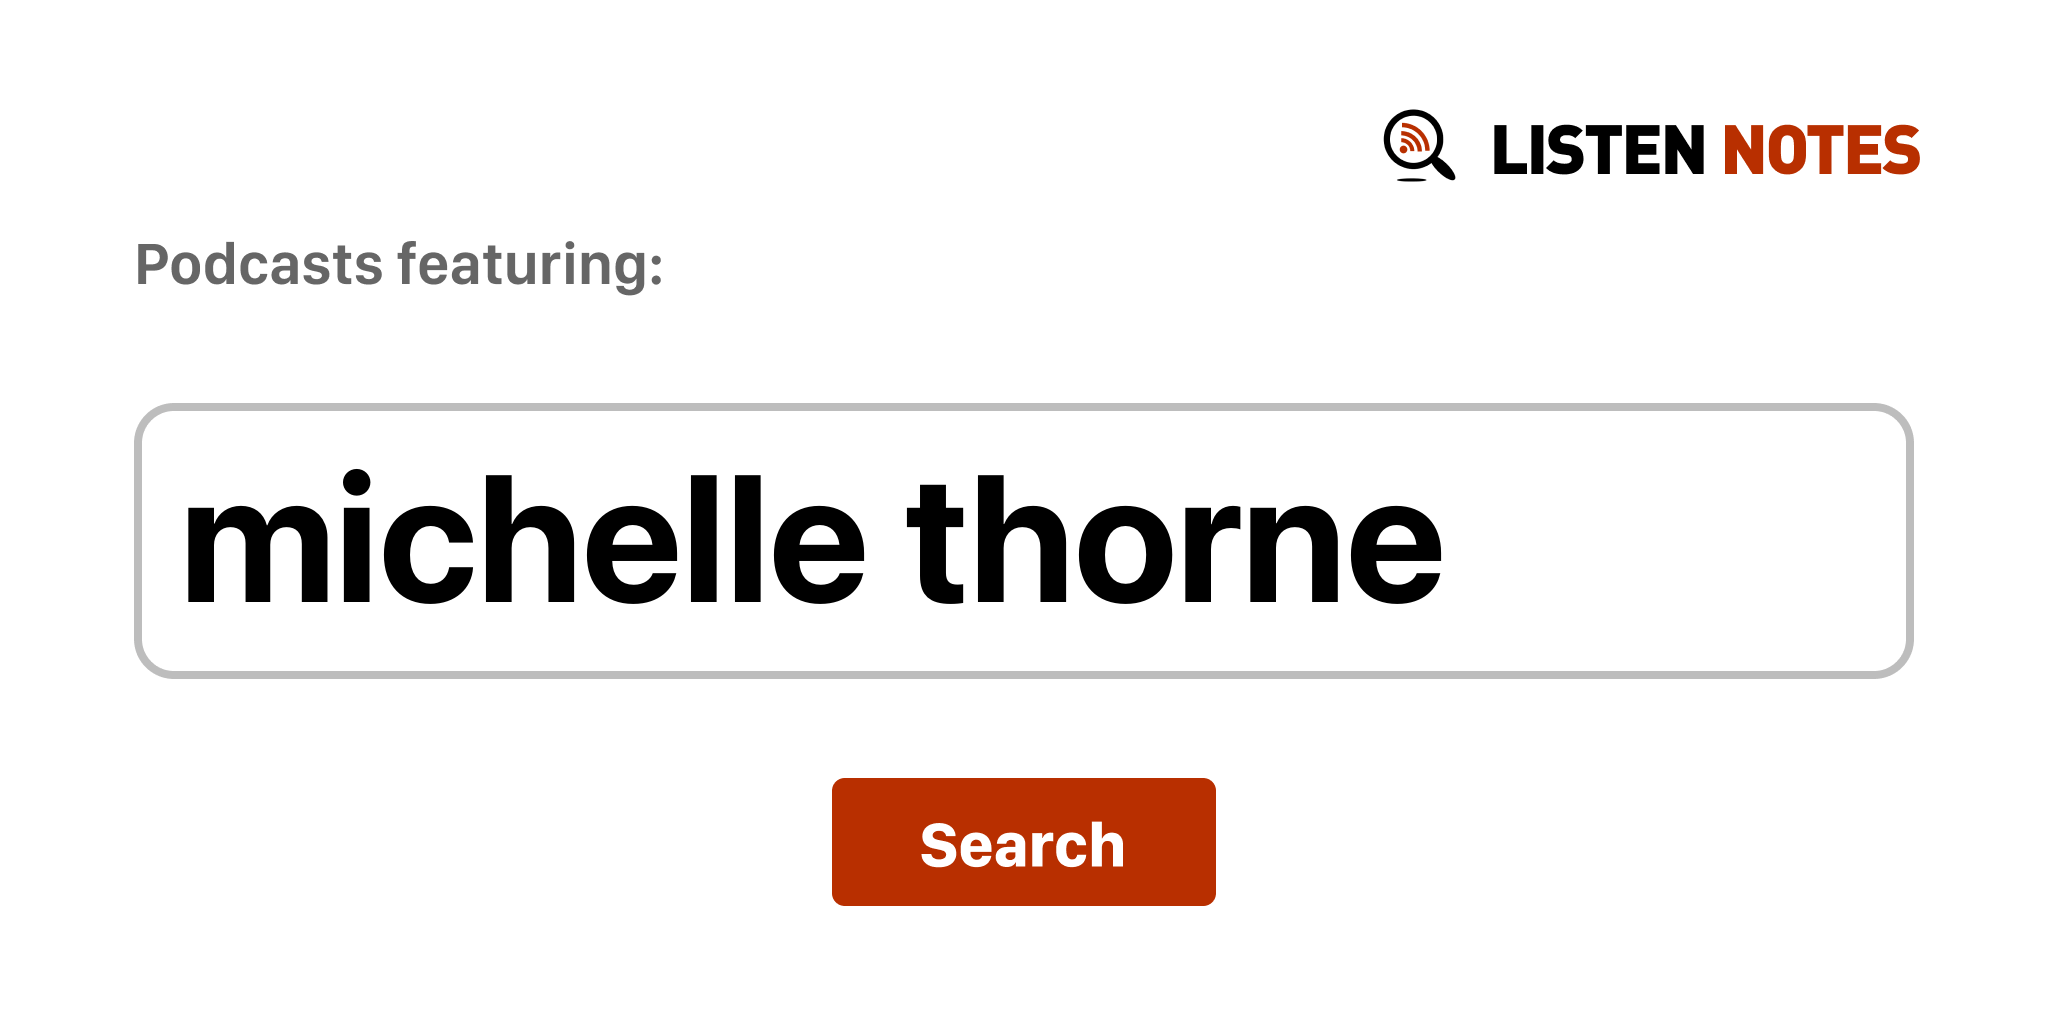 Michelle thorne website